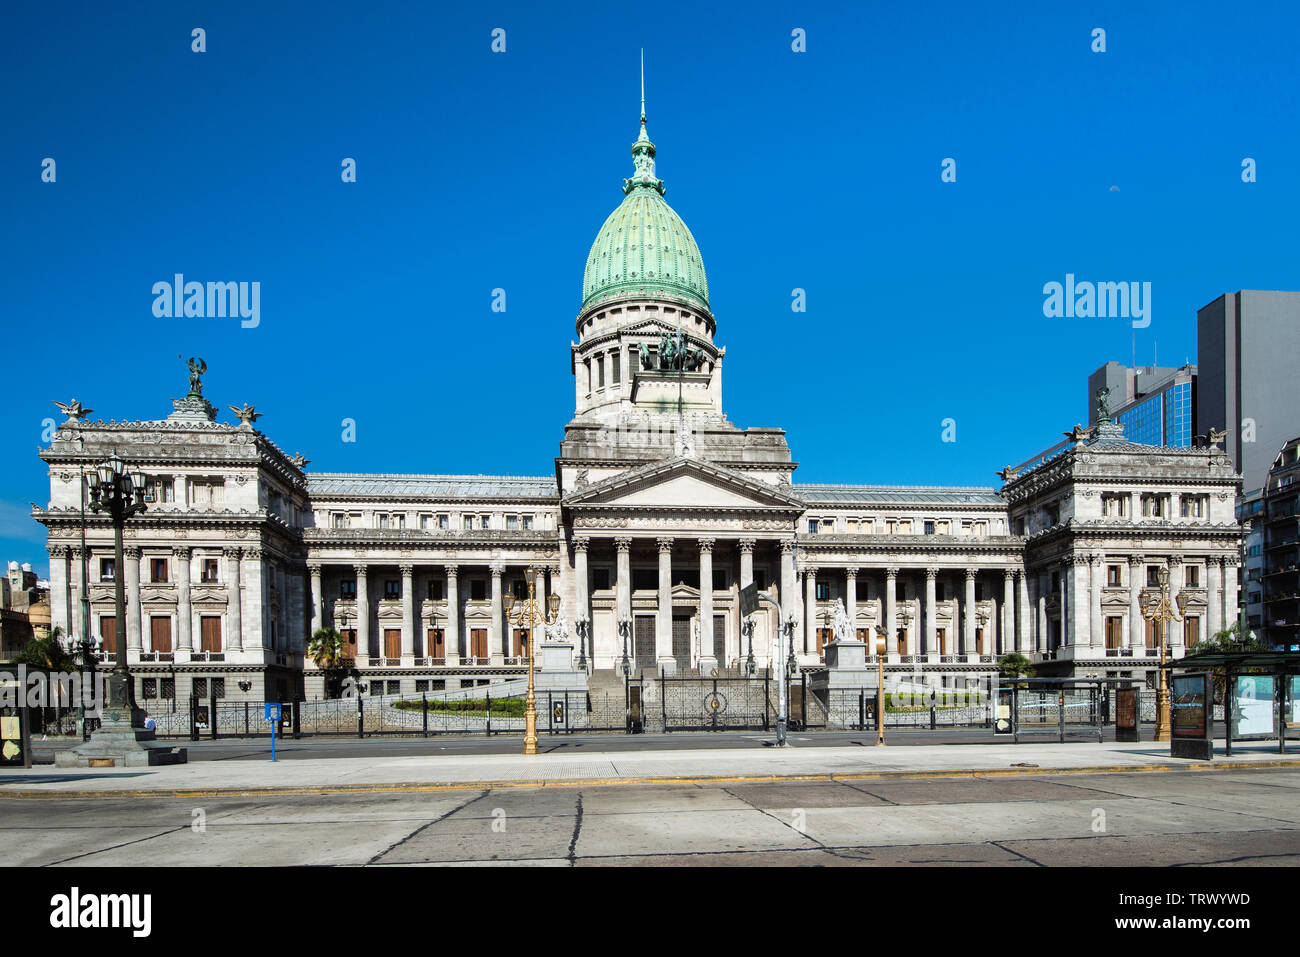 Der Palast der argentinischen nationalen Kongress ist eine monumentale Gebäude, Sitz der Argentinischen National Congress, Buenos Aires, Argentinien Stockfoto